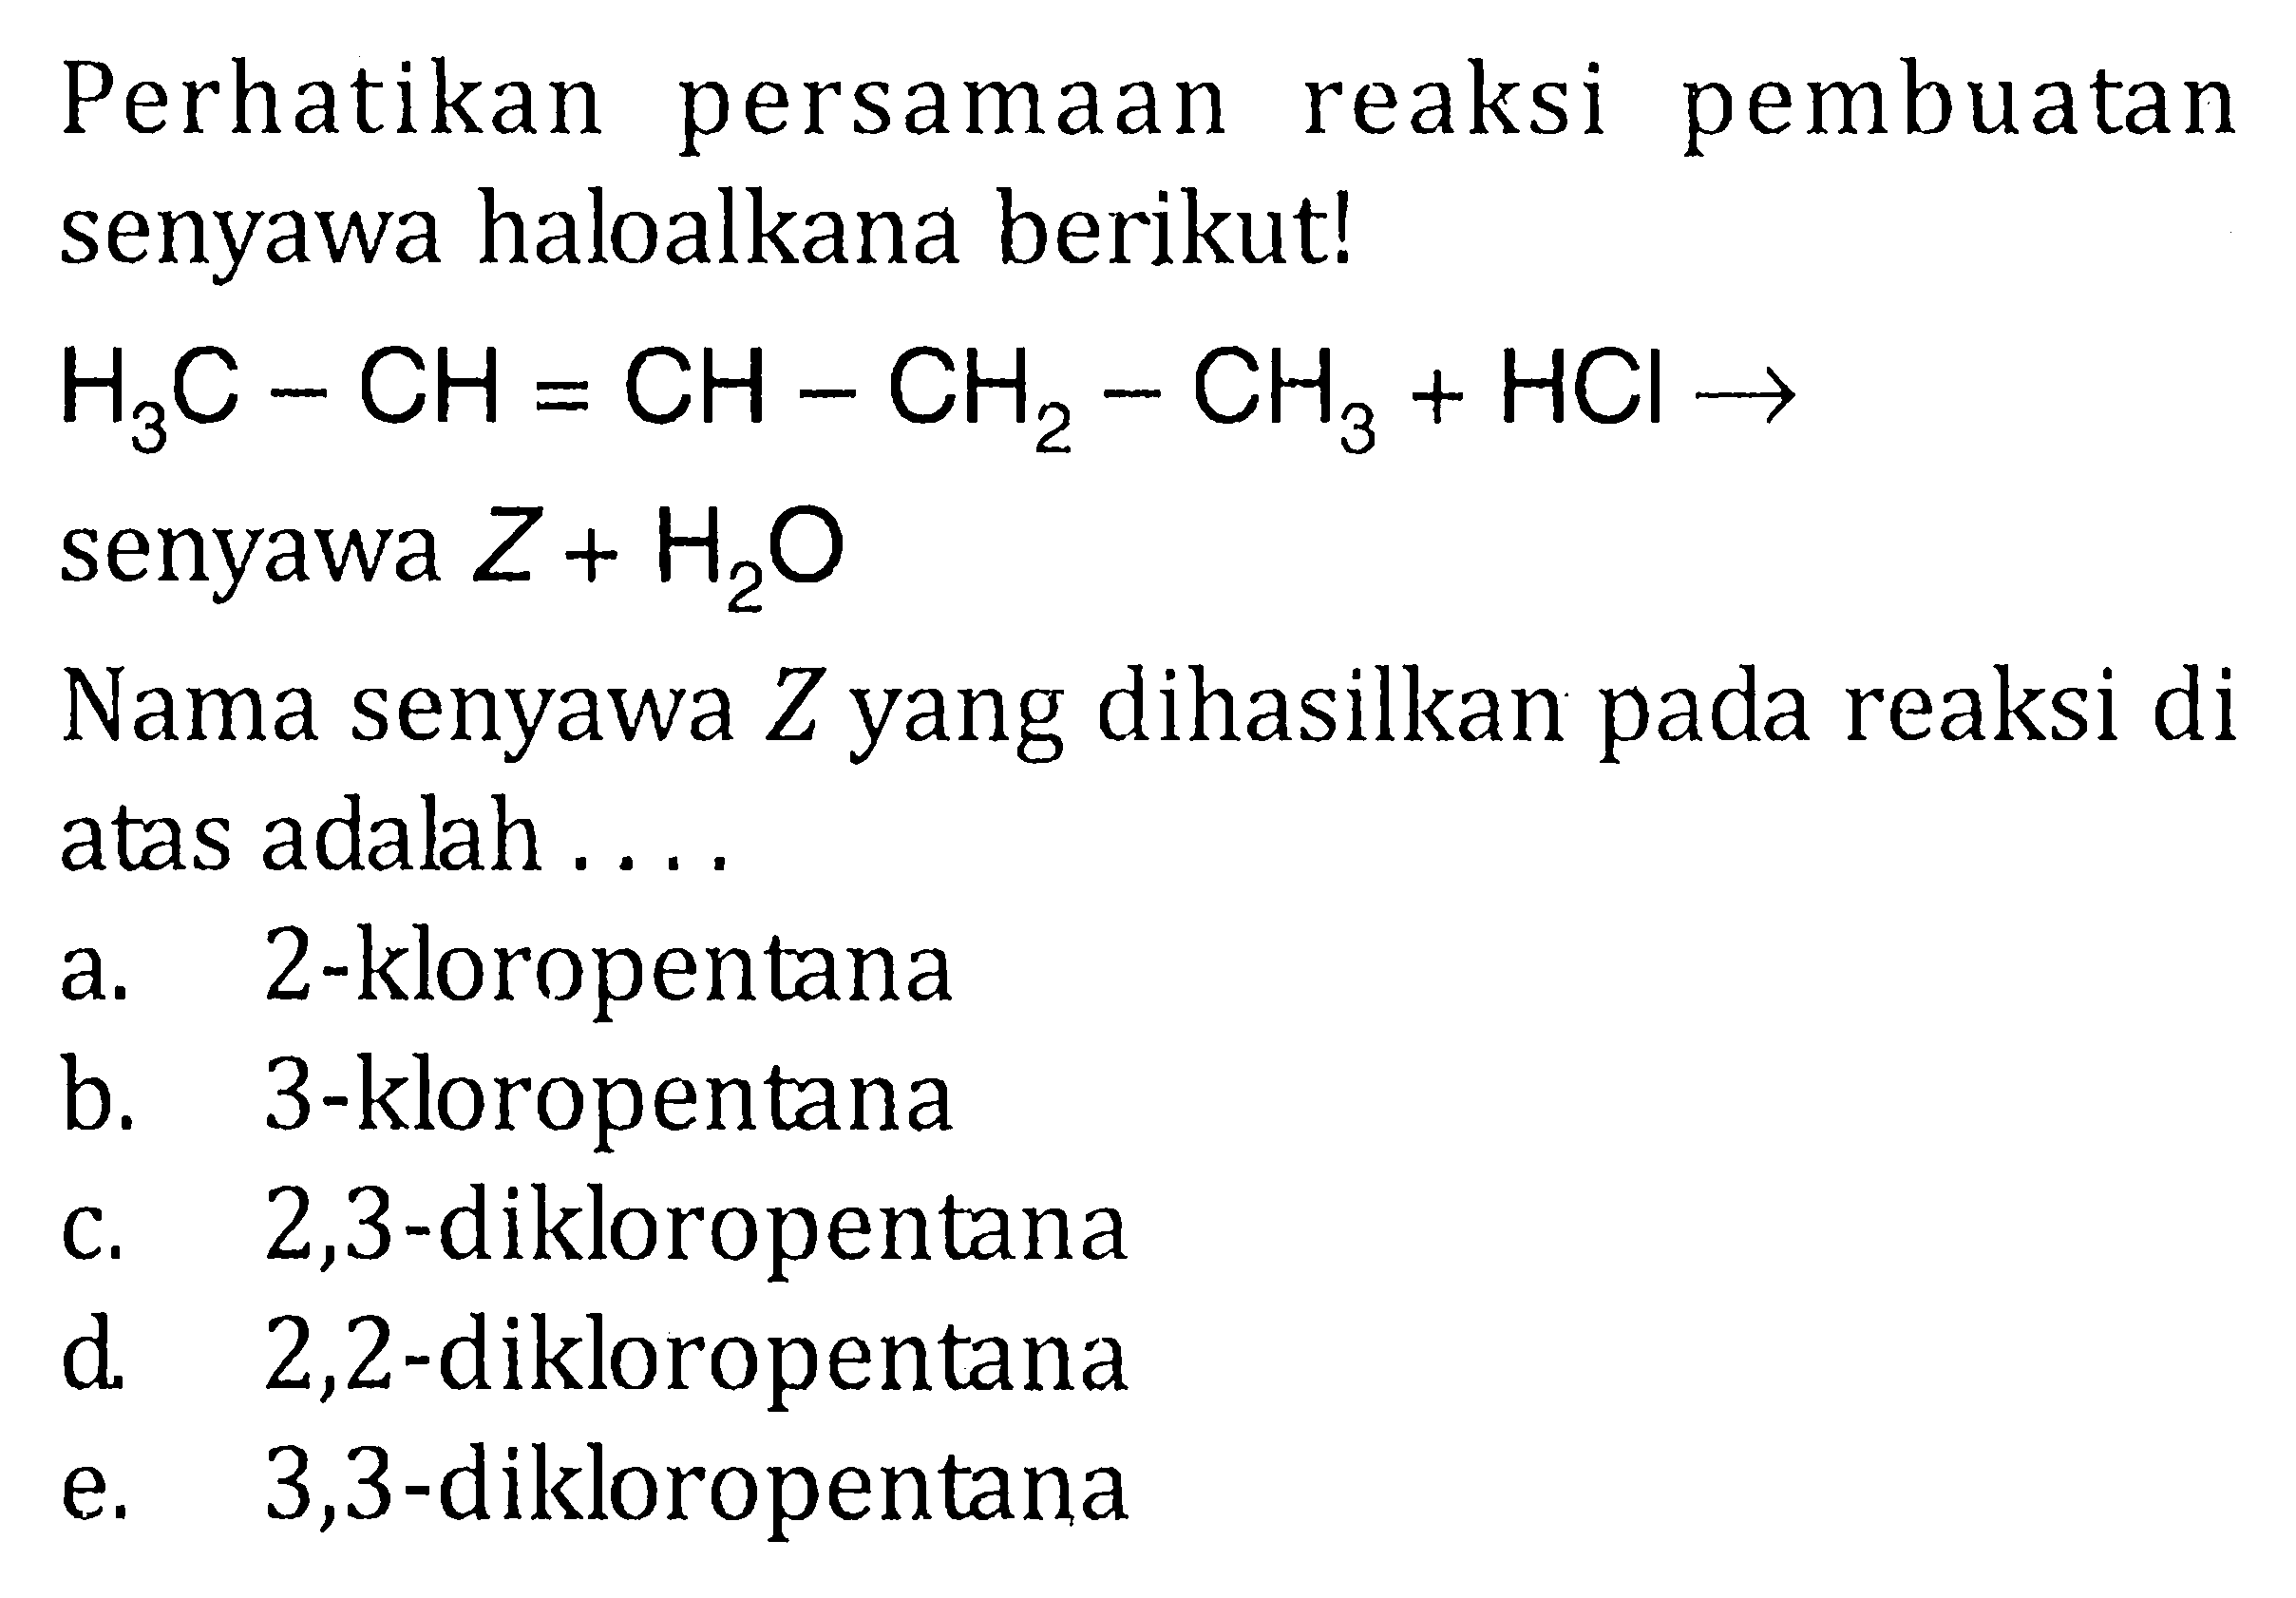 Perhatikan persamaan reaksi pembuatan senyawa haloalkana berikut! 
H3C - CH = CH - CH2 - CH3 + HCl -> senyawa Z + H2O
Nama senyawa Z yang dihasilkan pada reaksi di atas adalah.... 
